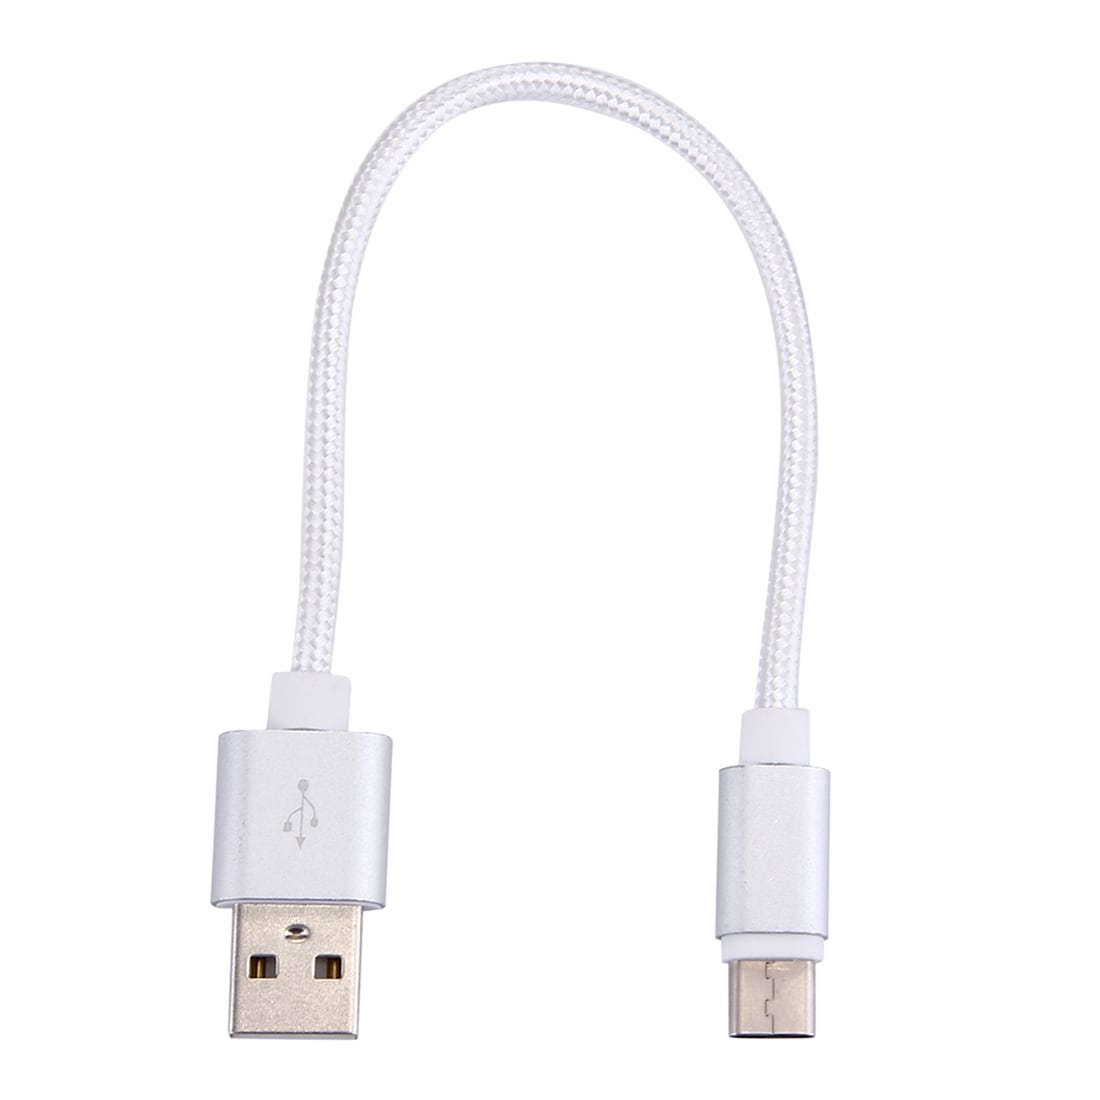 Korte USB-kabel 3.1 Typ-C  i stevig nylonstof